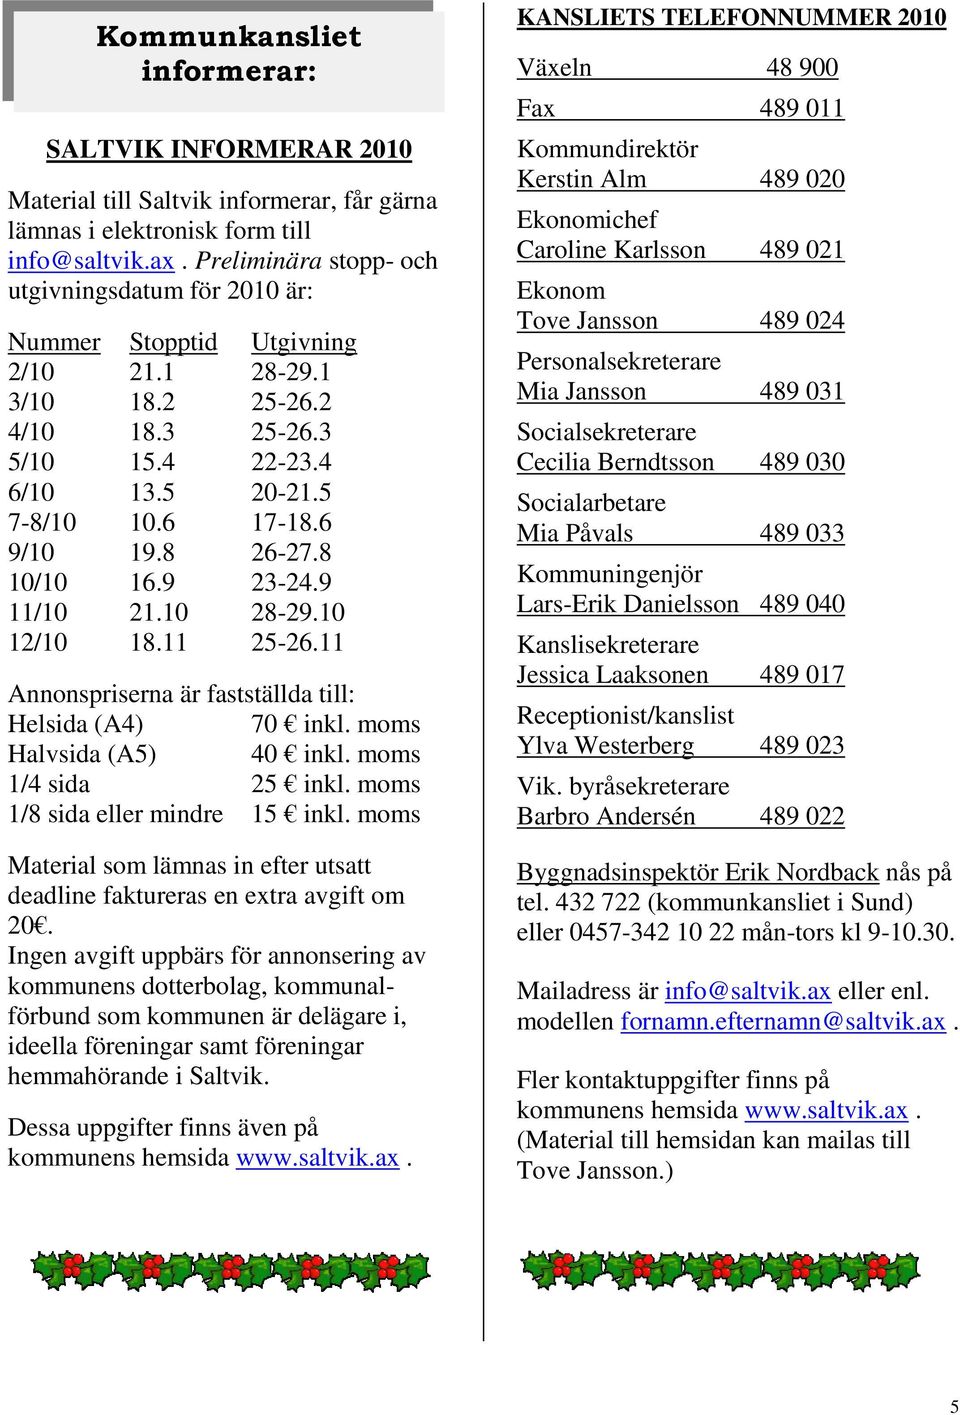 8 26-27.8 10/10 16.9 23-24.9 11/10 21.10 28-29.10 12/10 18.11 25-26.11 Annonspriserna är fastställda till: Helsida (A4) 70 inkl. moms Halvsida (A5) 40 inkl. moms 1/4 sida 25 inkl.